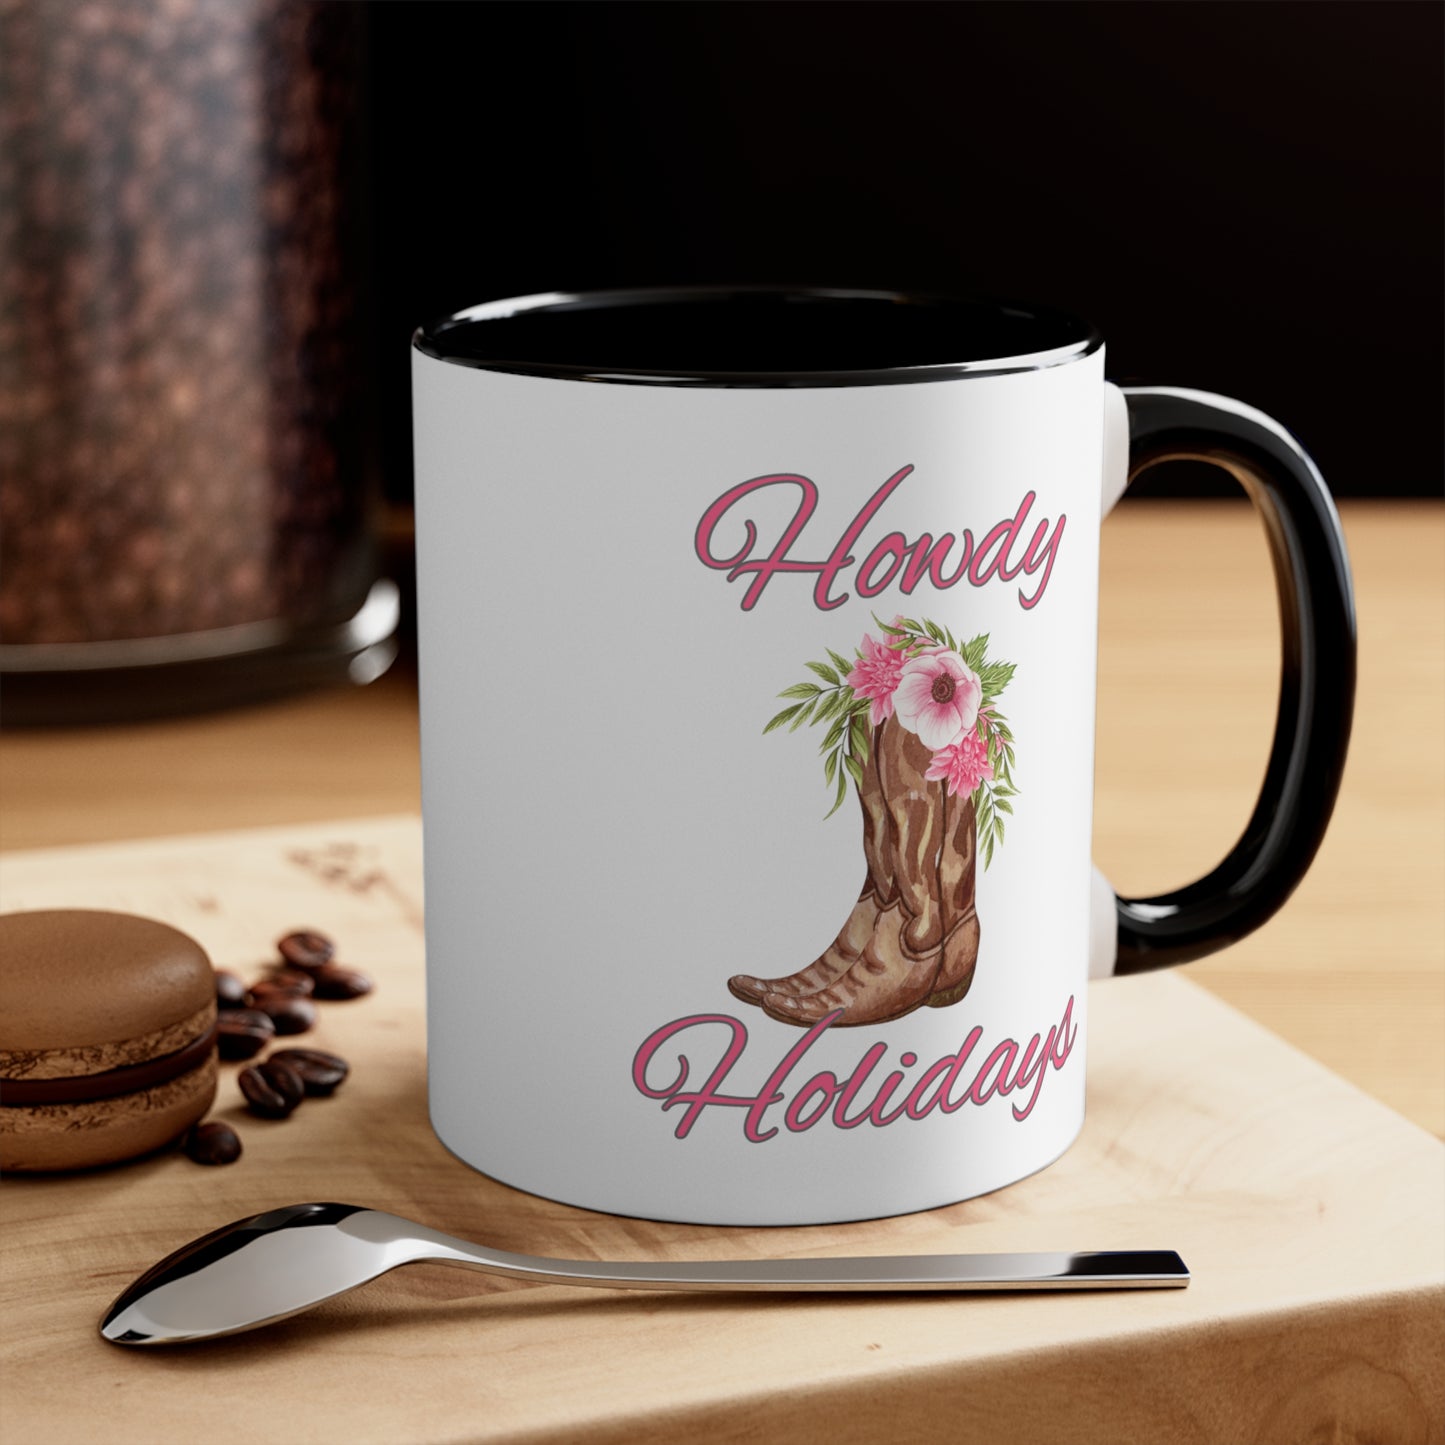 Howdy Holidays Accent Coffee Mug, 11oz